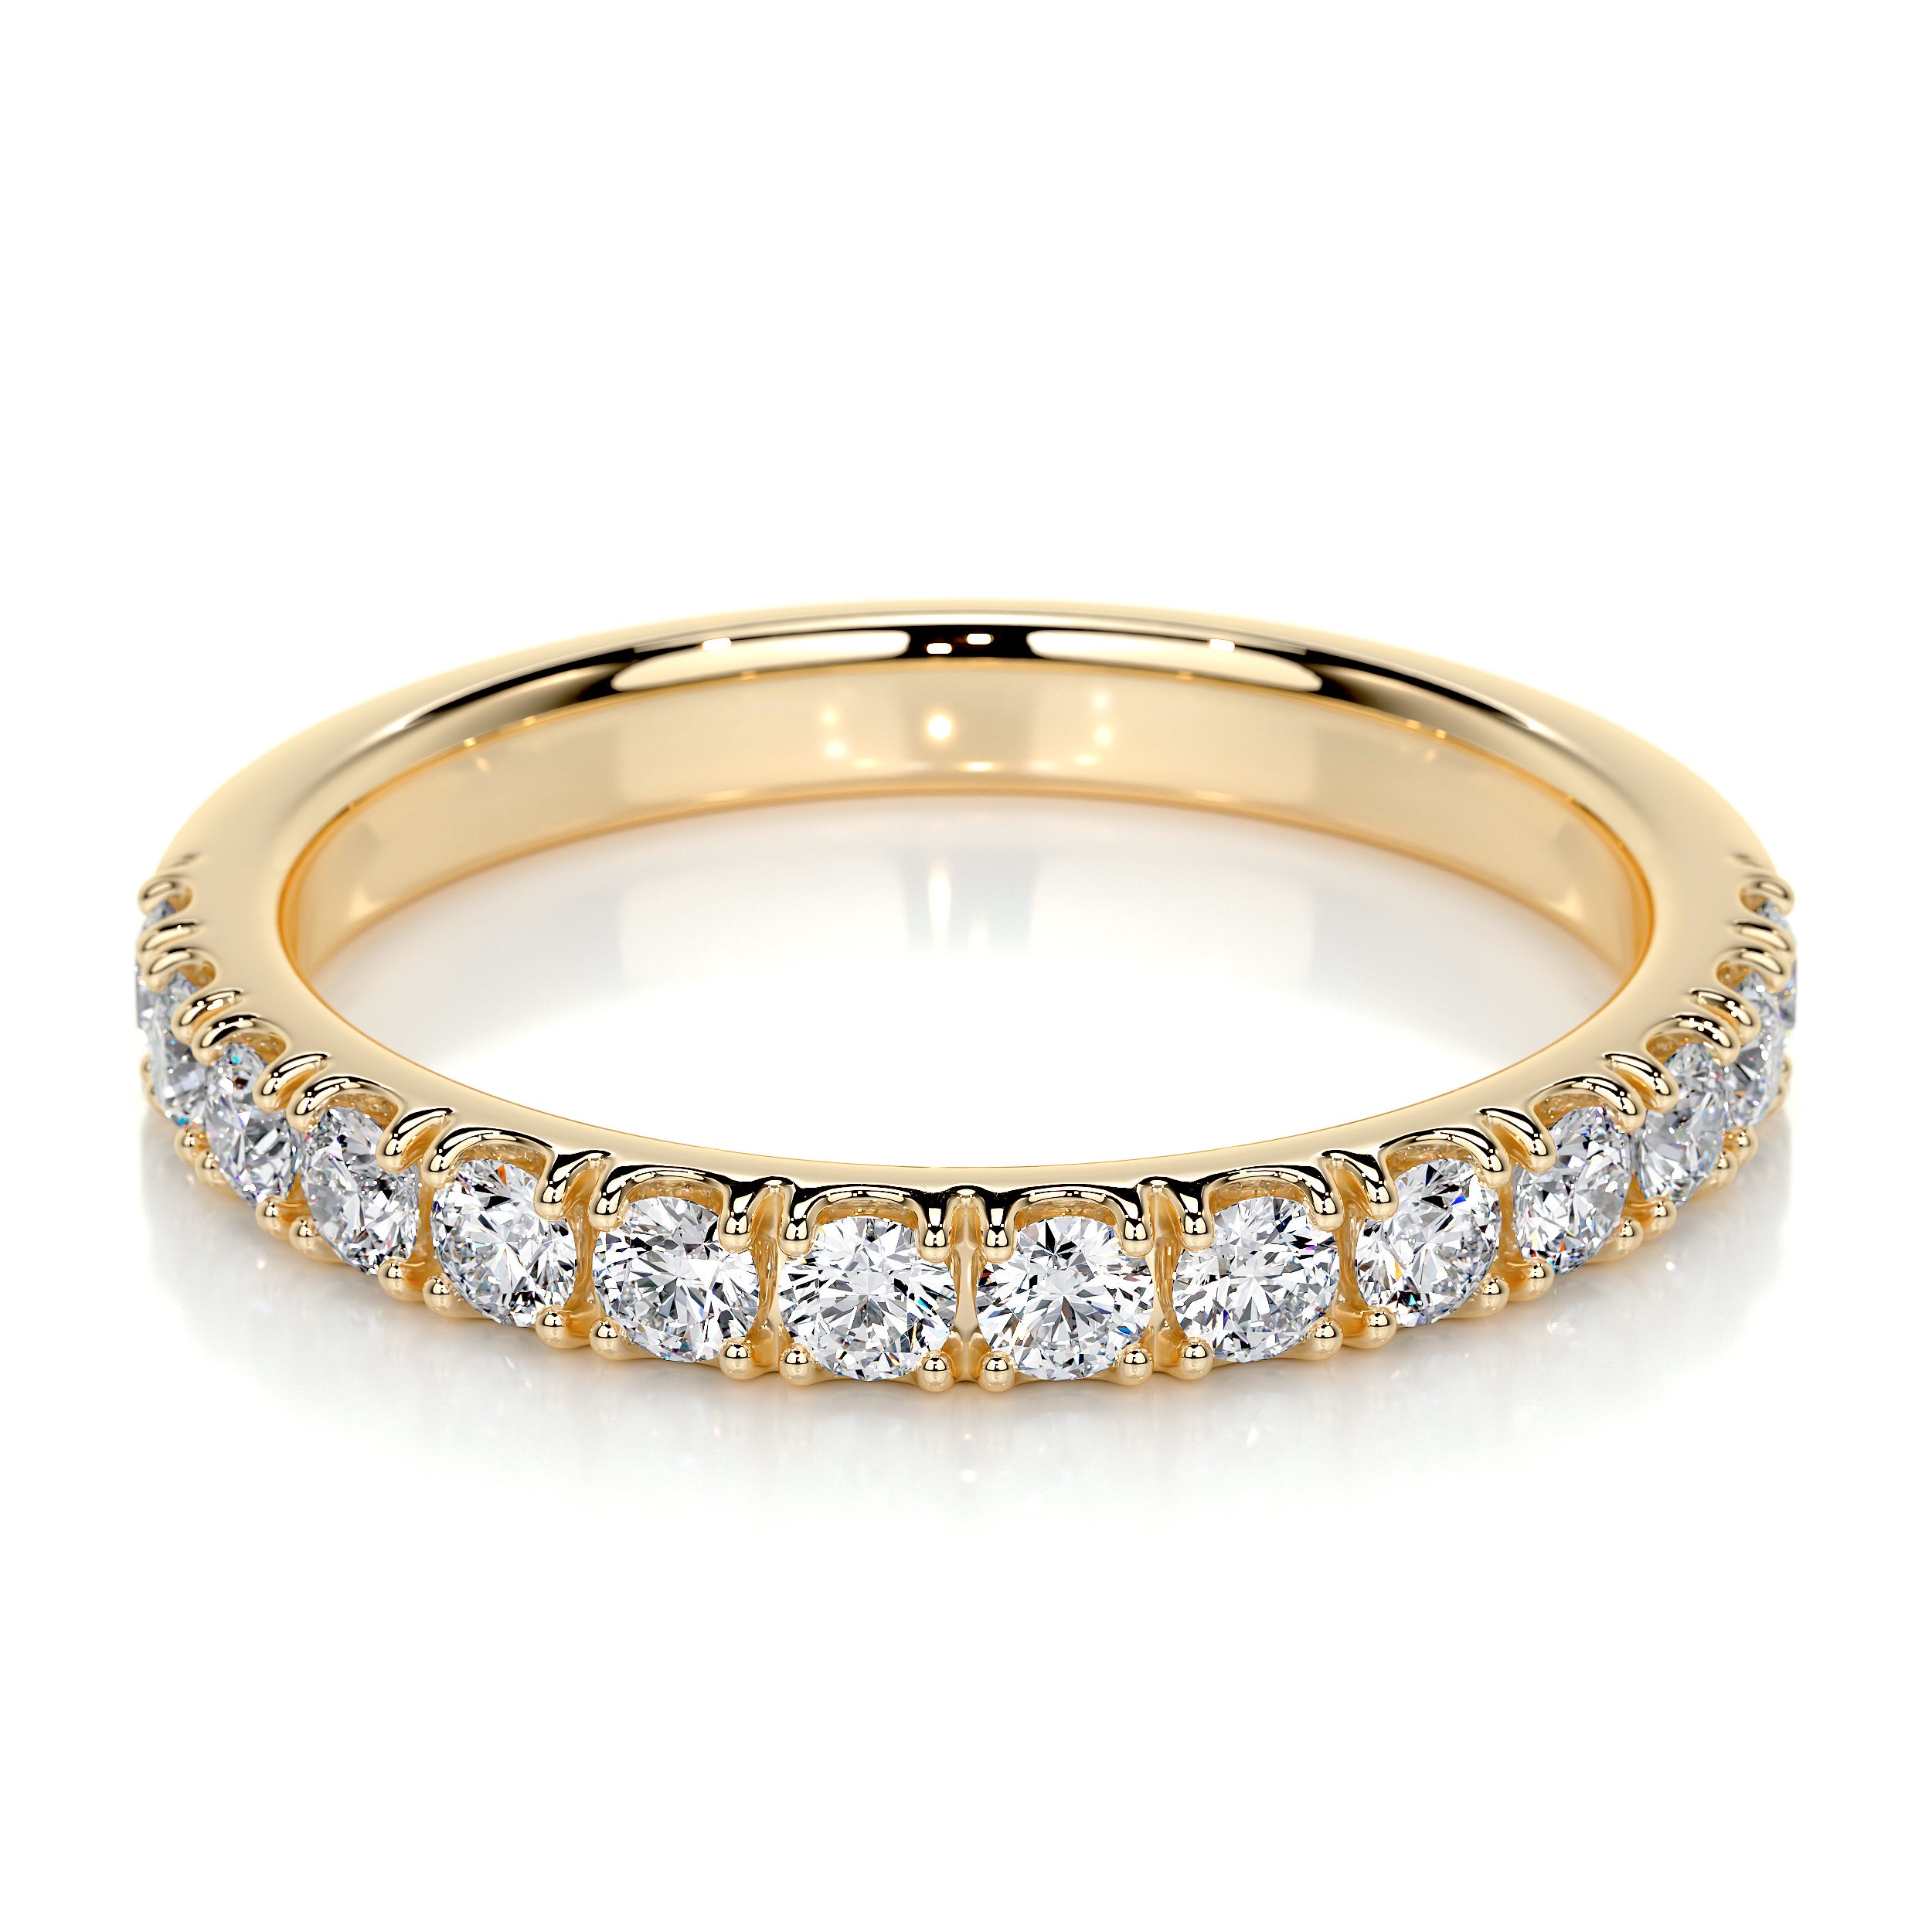 Blair Lab Grown Diamond Wedding Ring   (0.5 Carat) -18K Yellow Gold